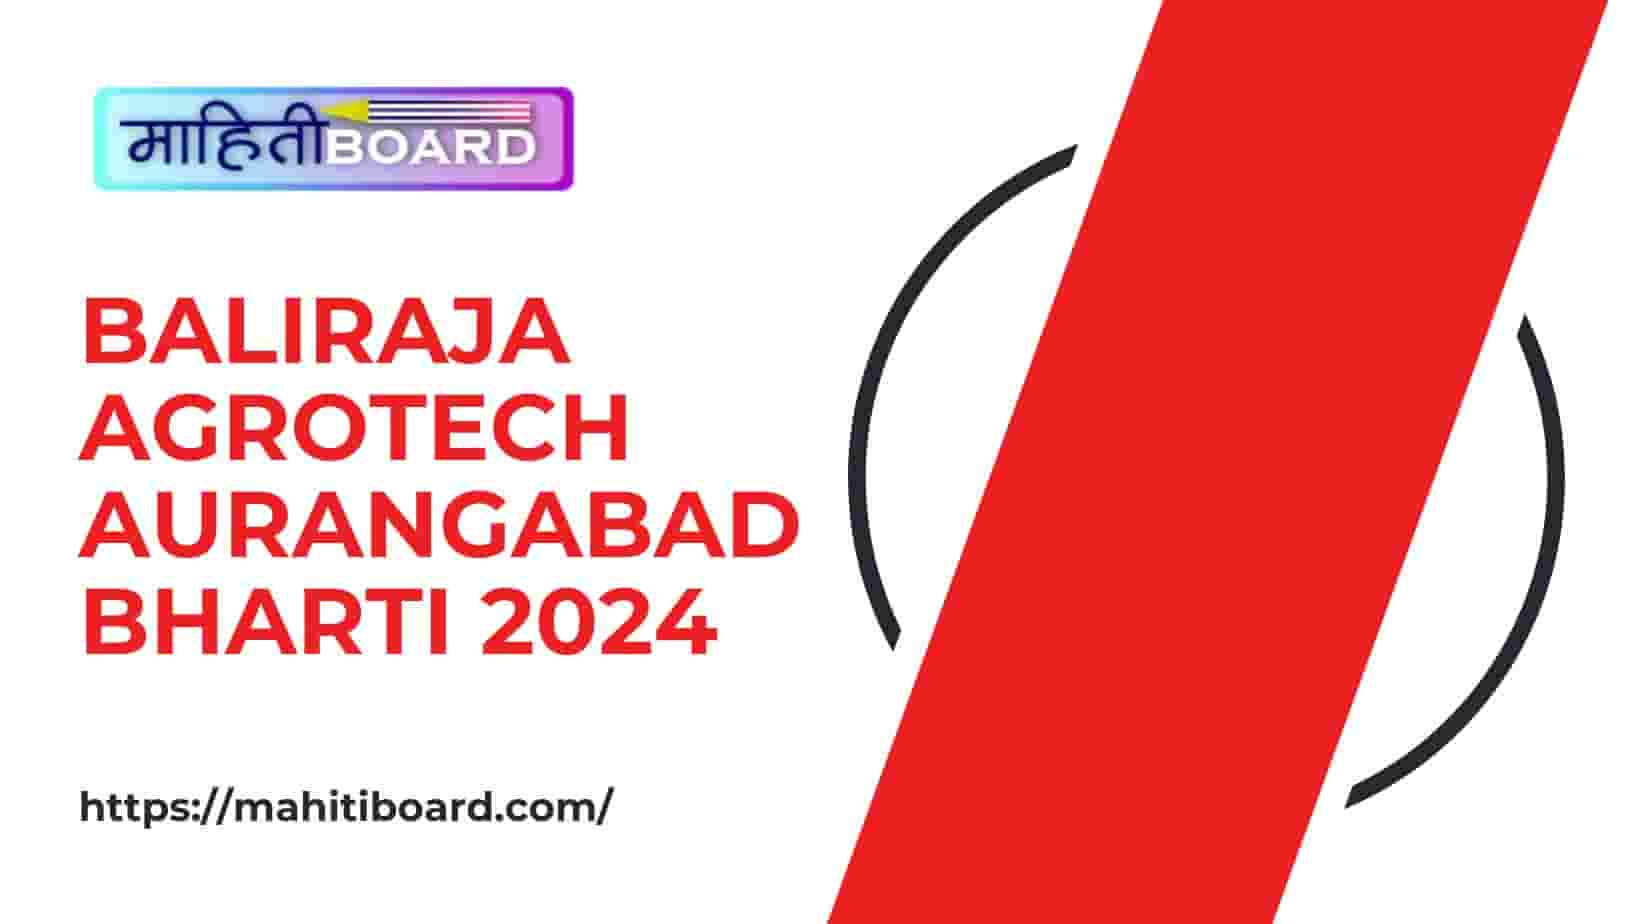 Baliraja Agrotech Aurangabad Bharti 2024